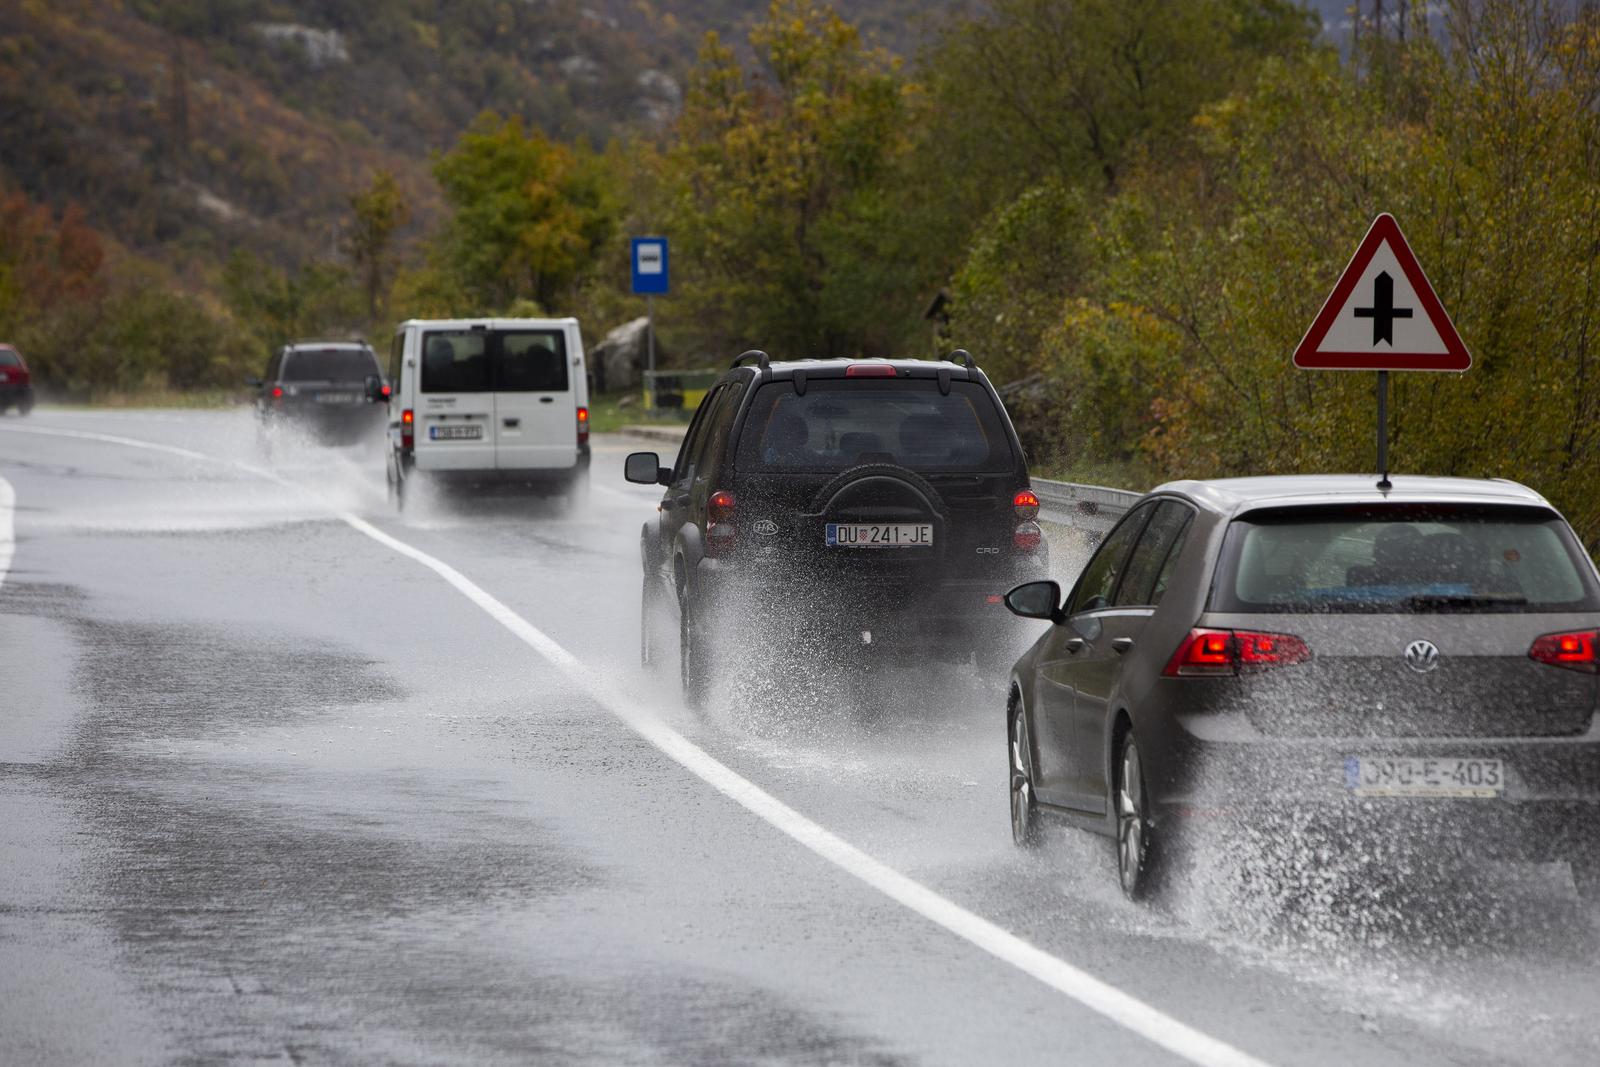 05.11.2021., Grabovica - Na magistralnom putu M-17, na potezu Mostar-Jablanica, uslijed velikih kisa,  voda koja se slijeva sa brda otezava promet na pojedinim dijelovima ove dionice Photo: Denis Kapetanovic/PIXSELL